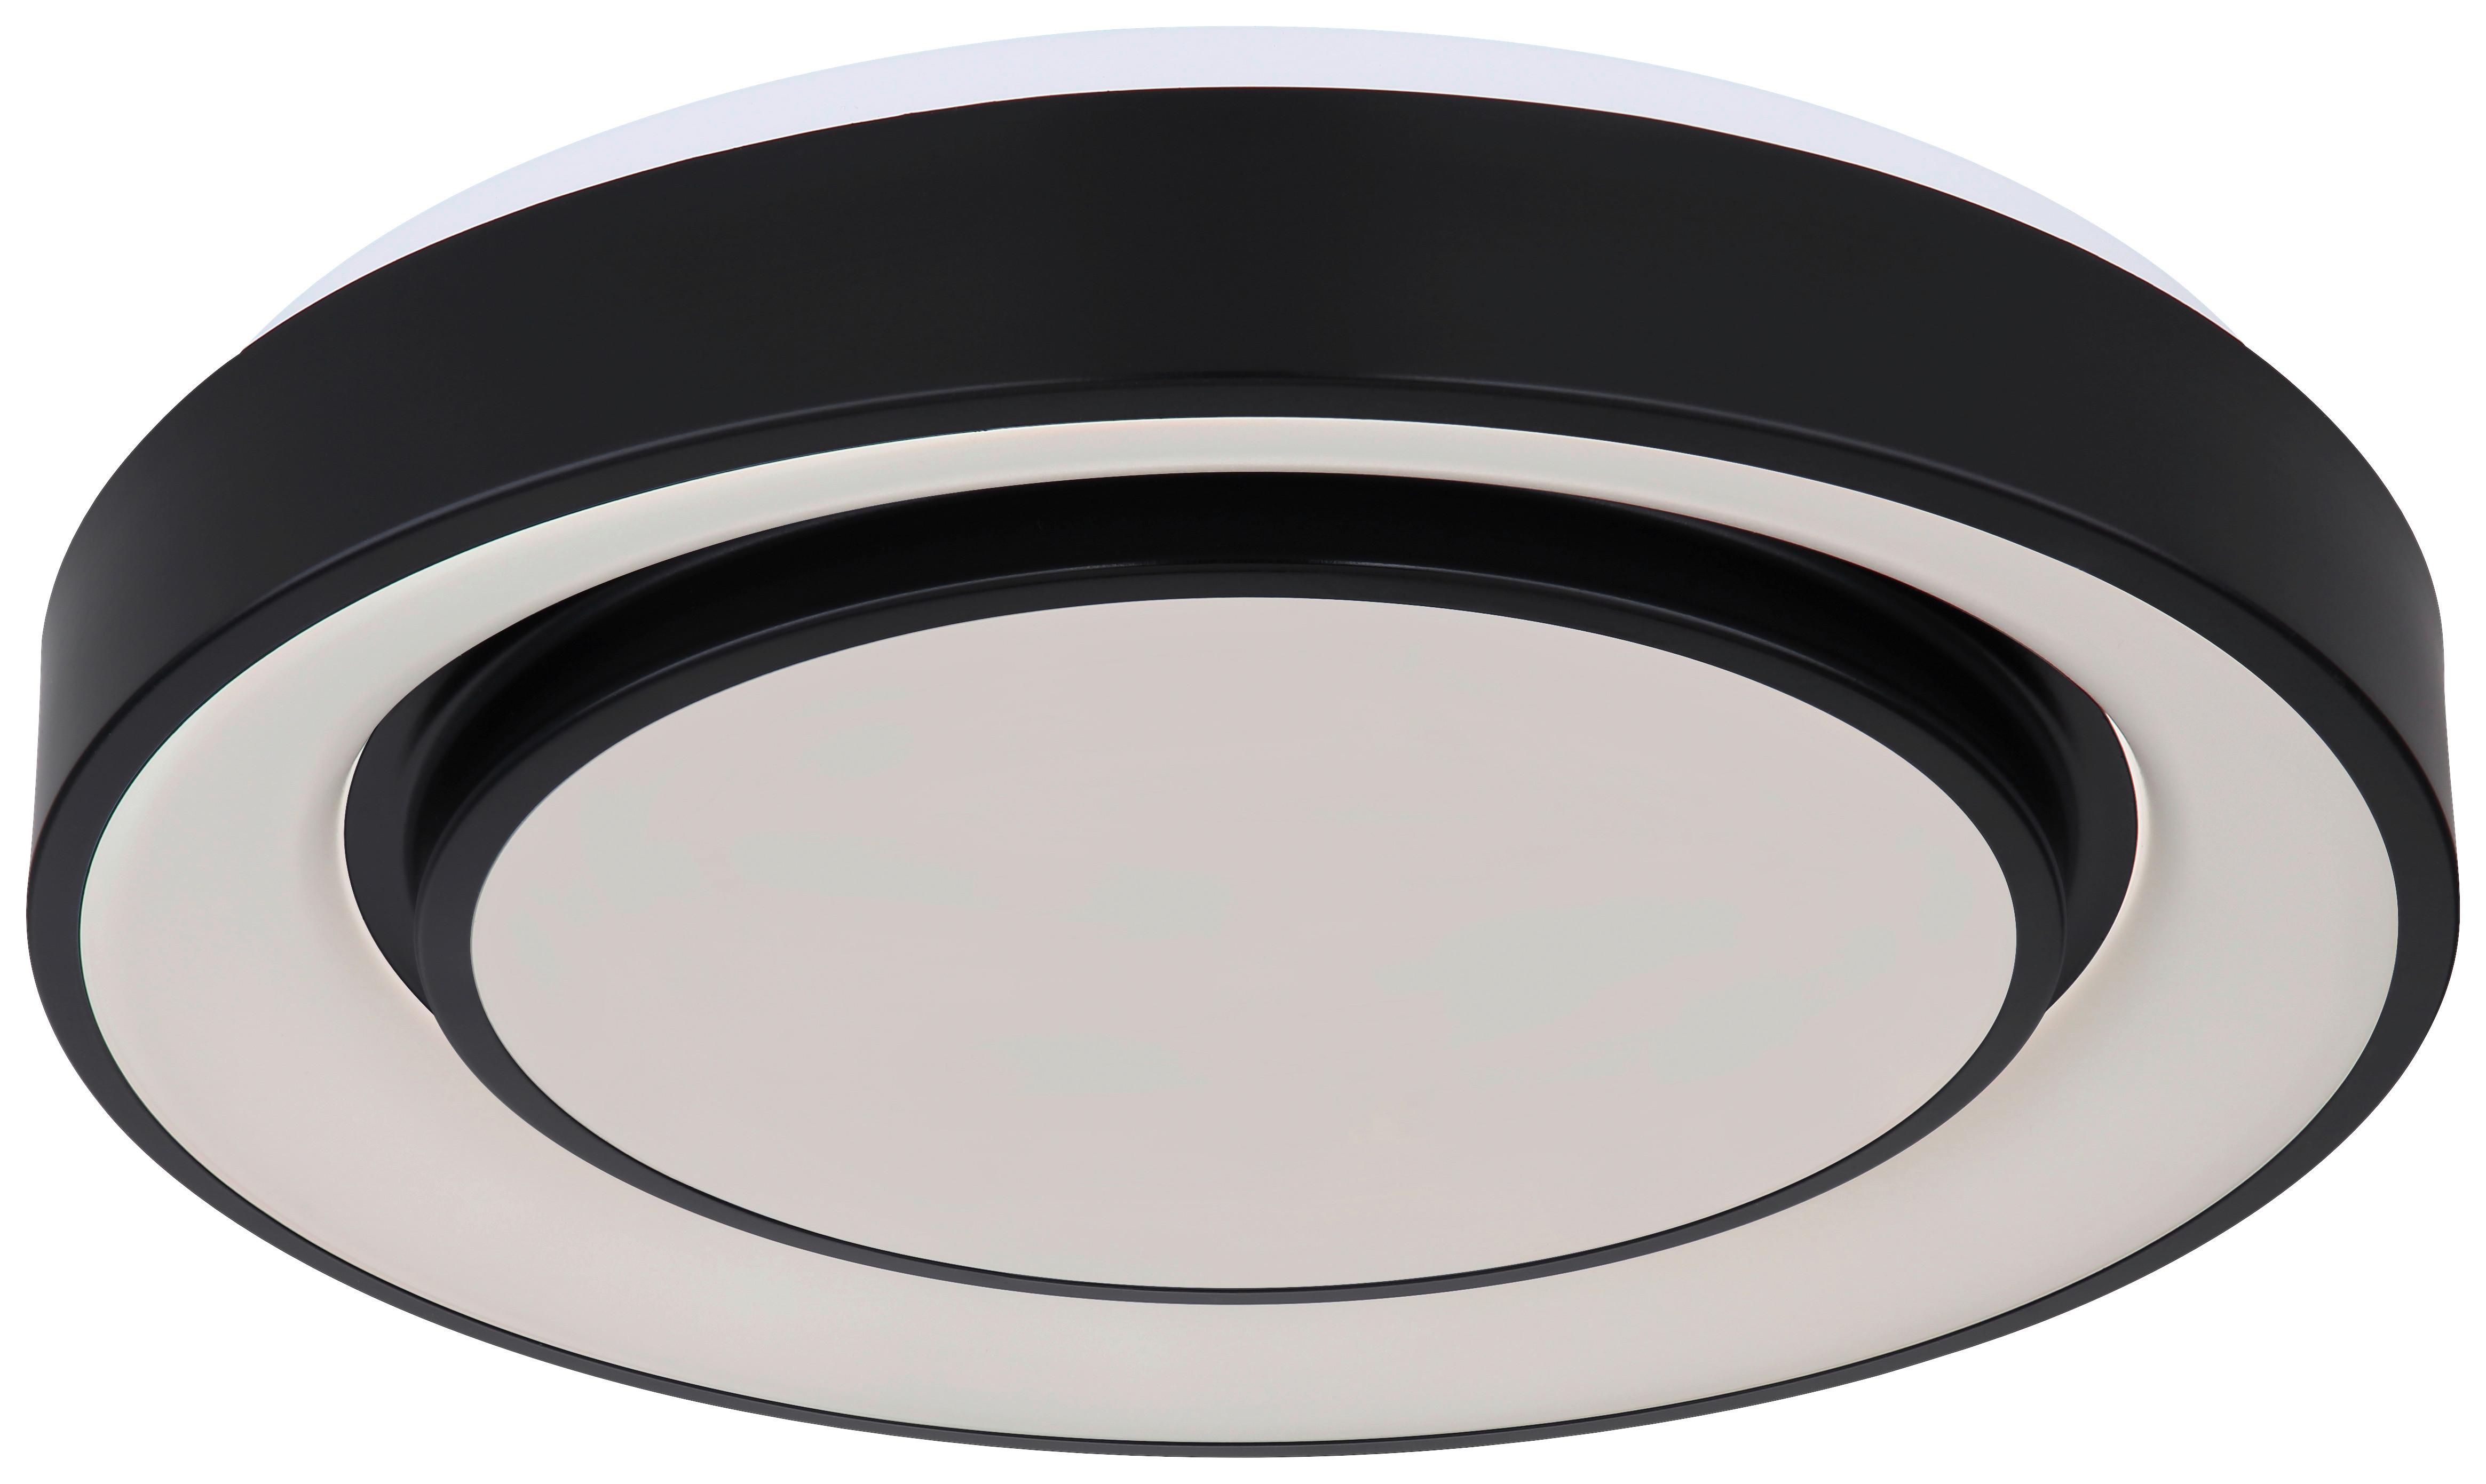 LED-Deckenleuchte Sully in Schwarz/Opal max. 24 Watt - Opal/Schwarz, MODERN, Kunststoff/Metall (38/7,5cm)